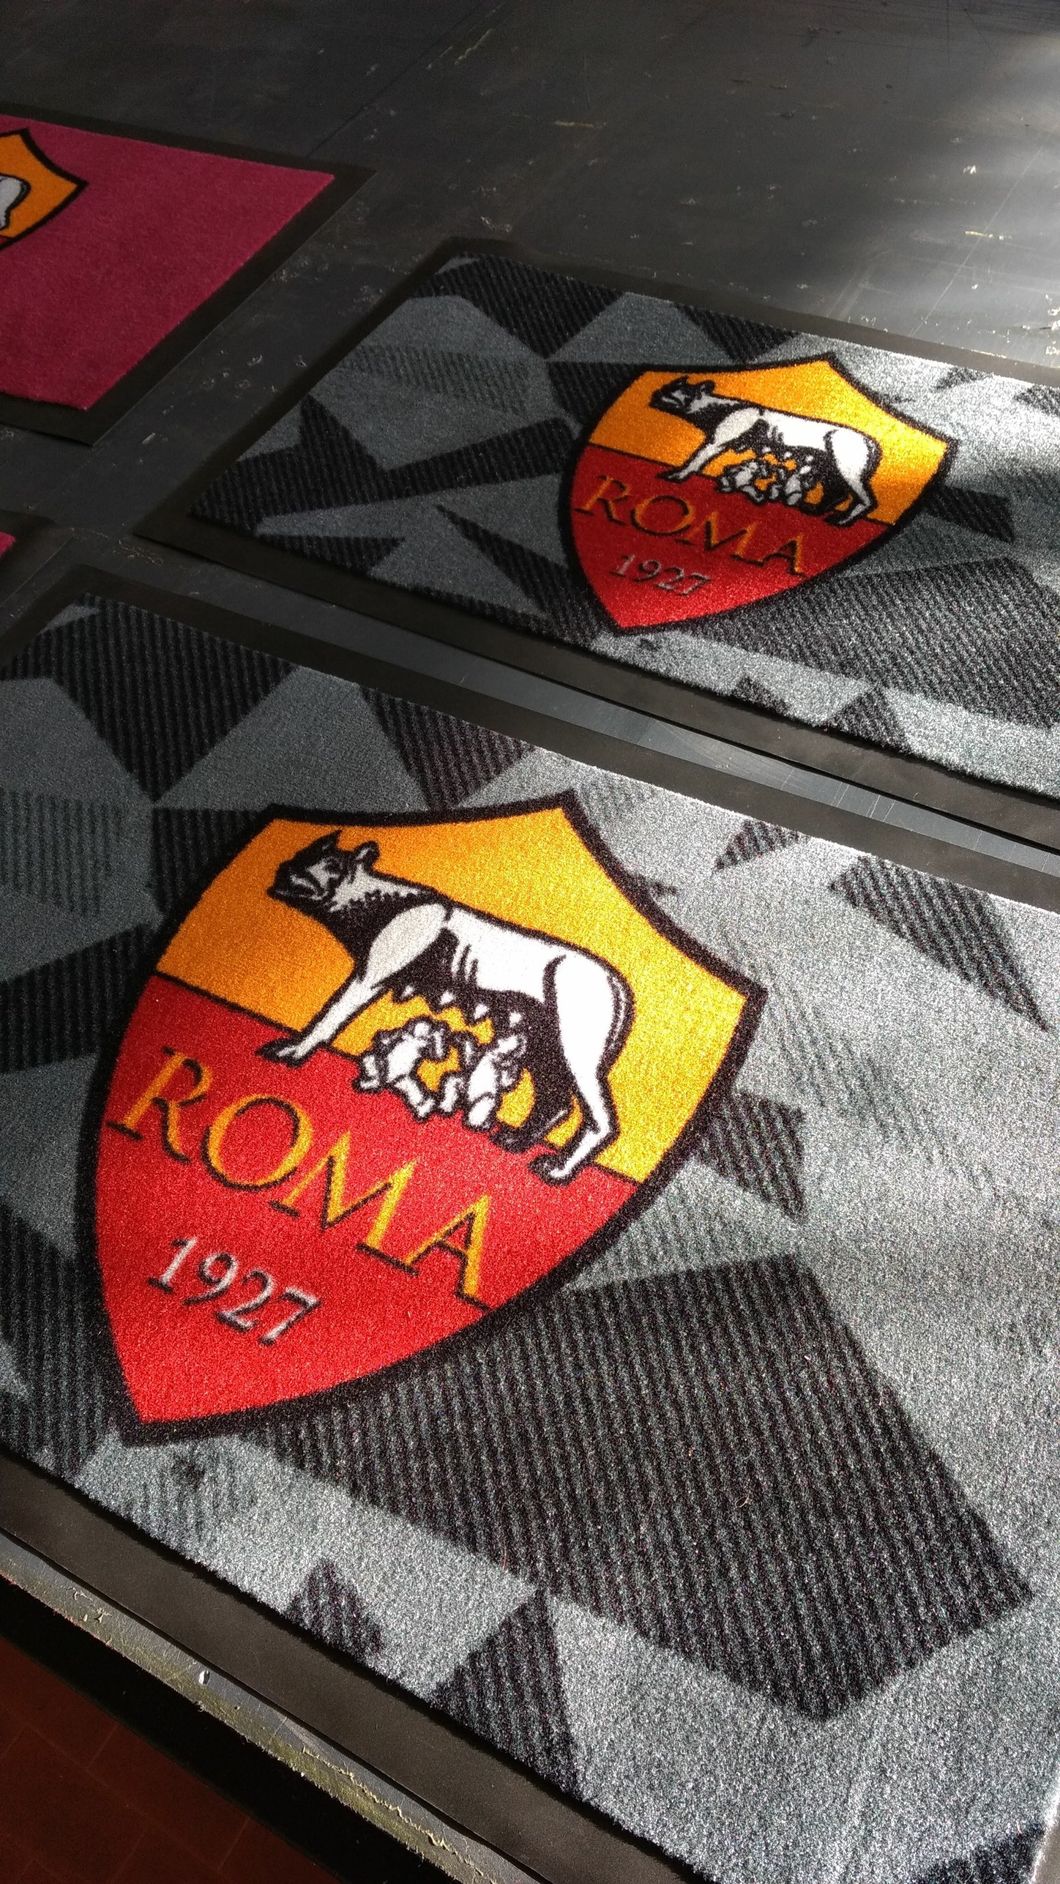 zerbino personalizzato della roma